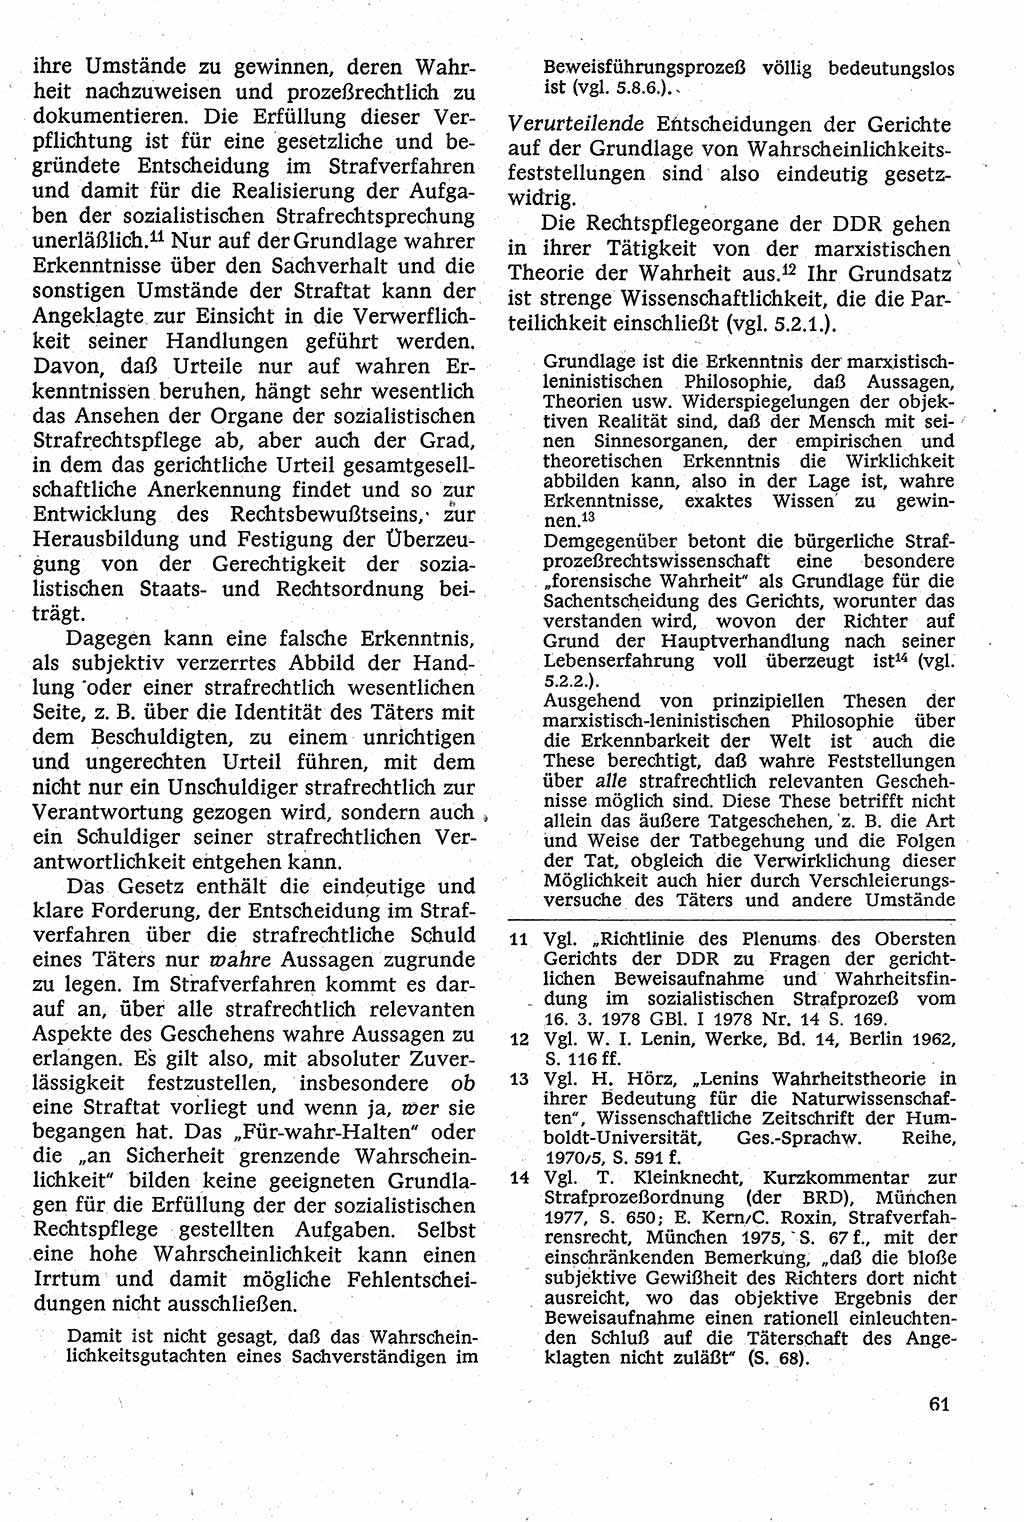 Strafverfahrensrecht [Deutsche Demokratische Republik (DDR)], Lehrbuch 1982, Seite 61 (Strafverf.-R. DDR Lb. 1982, S. 61)